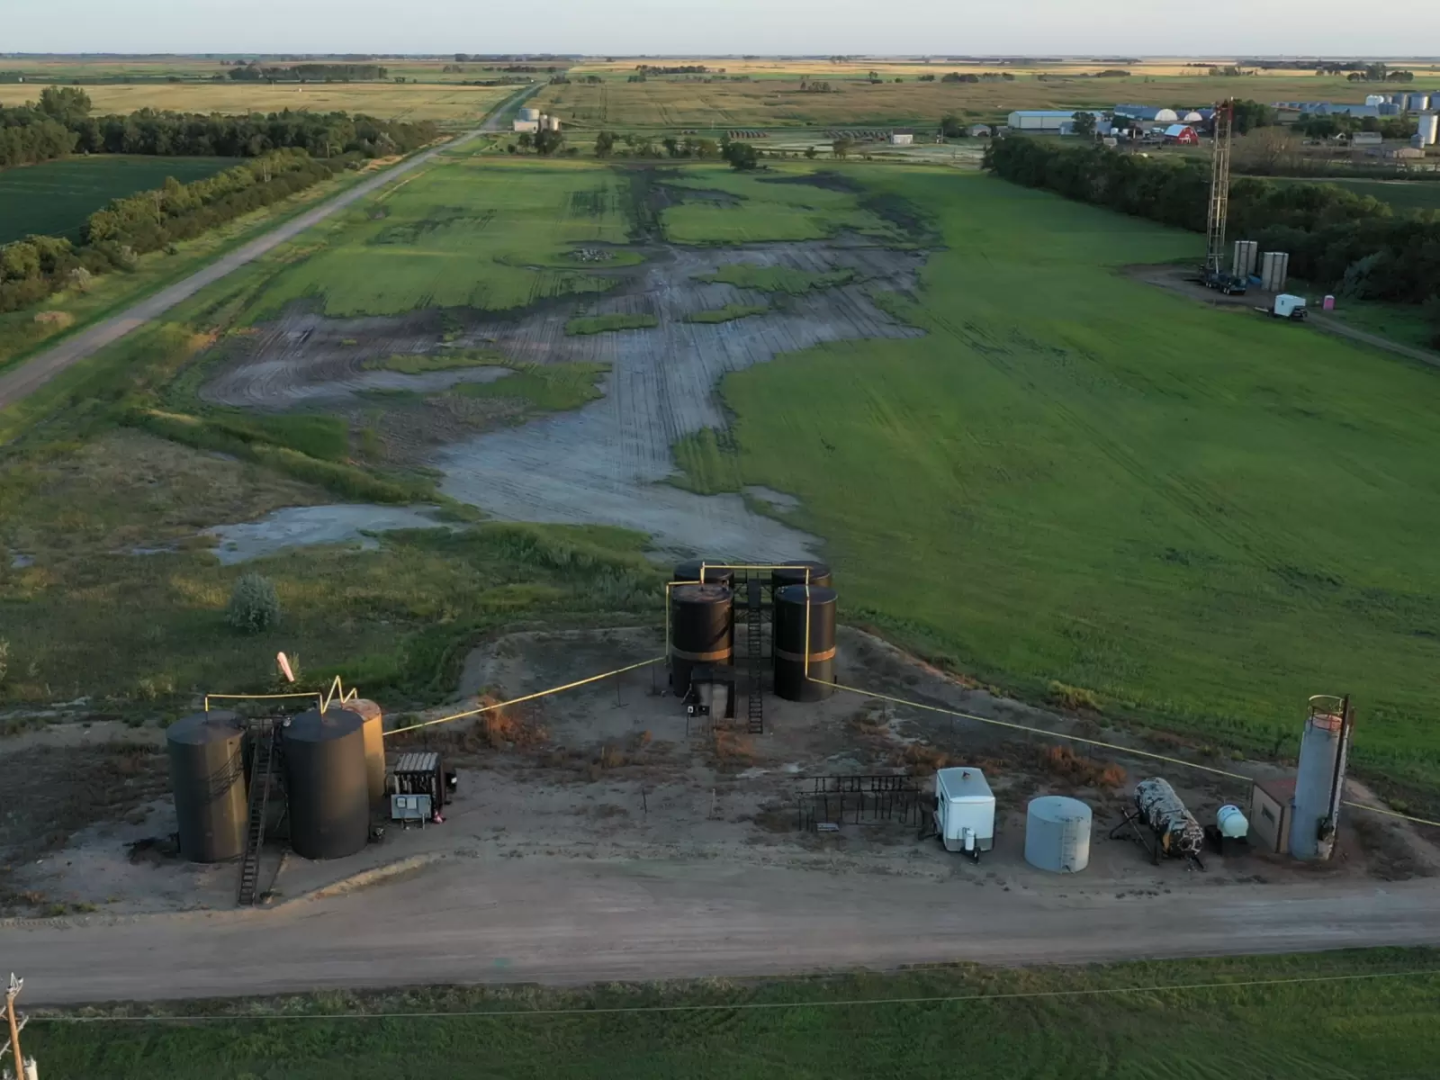 Oil slick spreading over green farmland in North Dakota